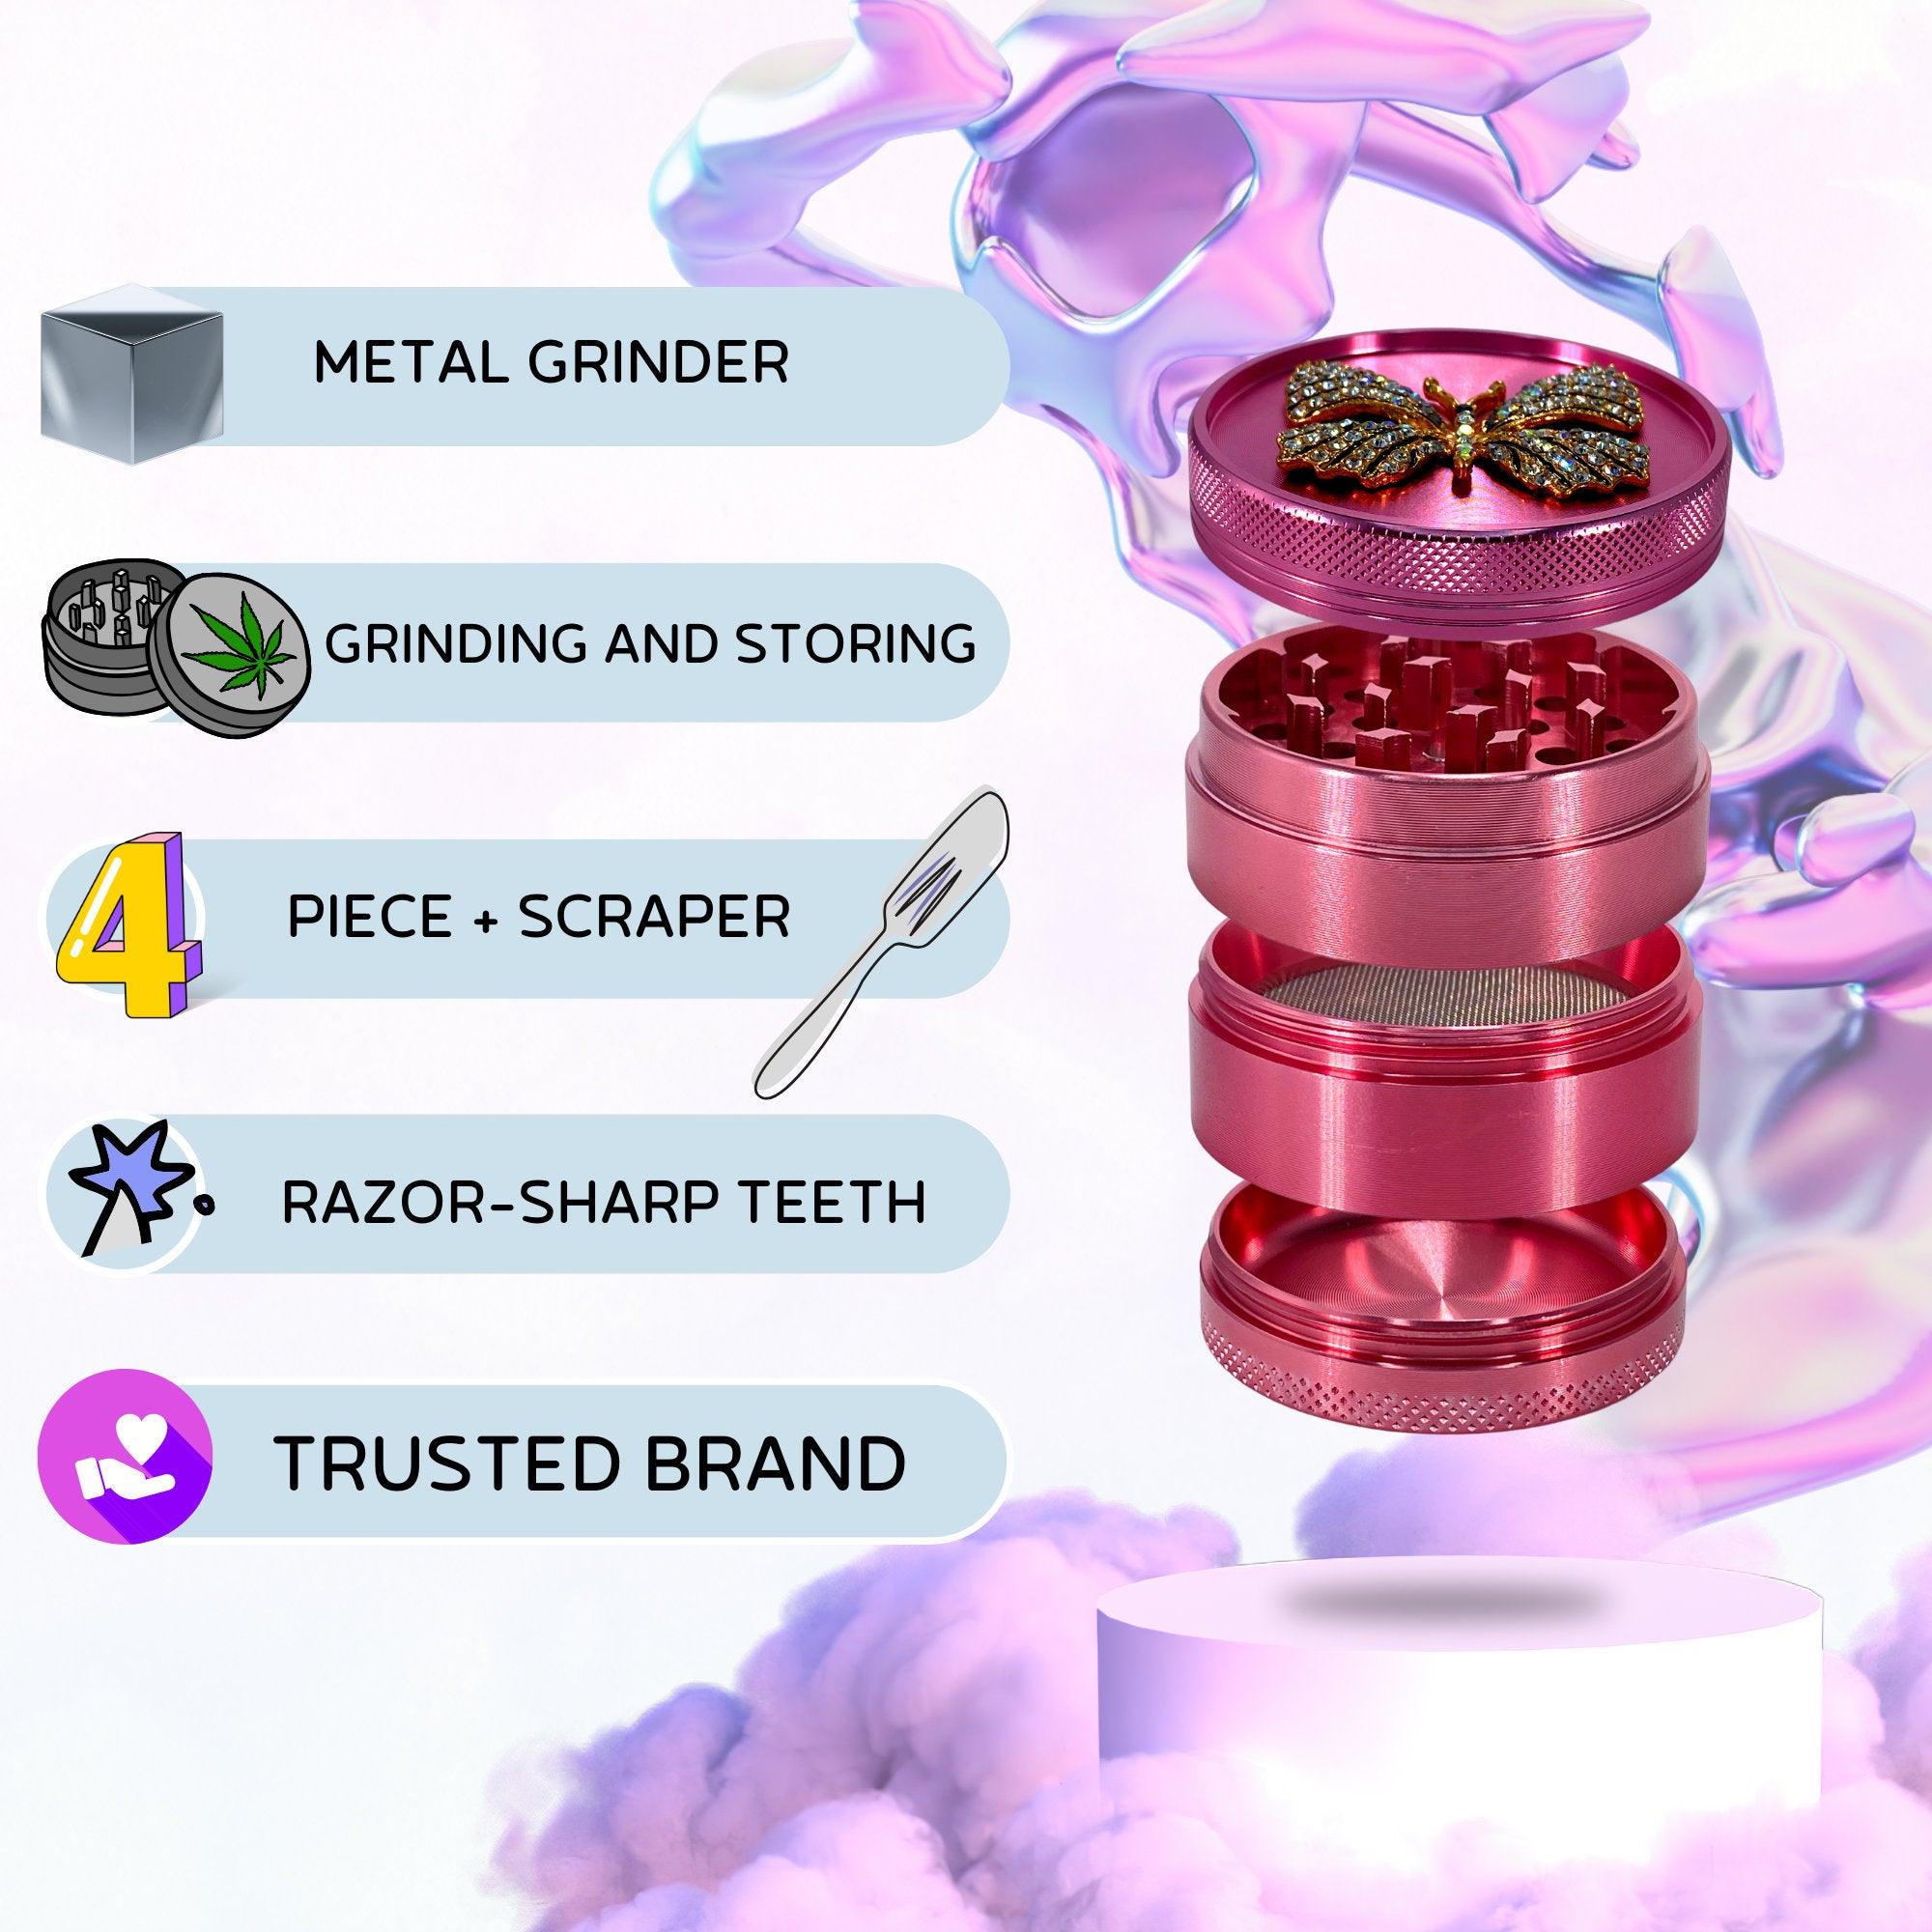 Butterfly Weed Grinder | Metal Grinder, cannabis grinders, uper cute grinder, 4 piece grinder,Pink Grinder, Herb Girly grinder, rhinestones